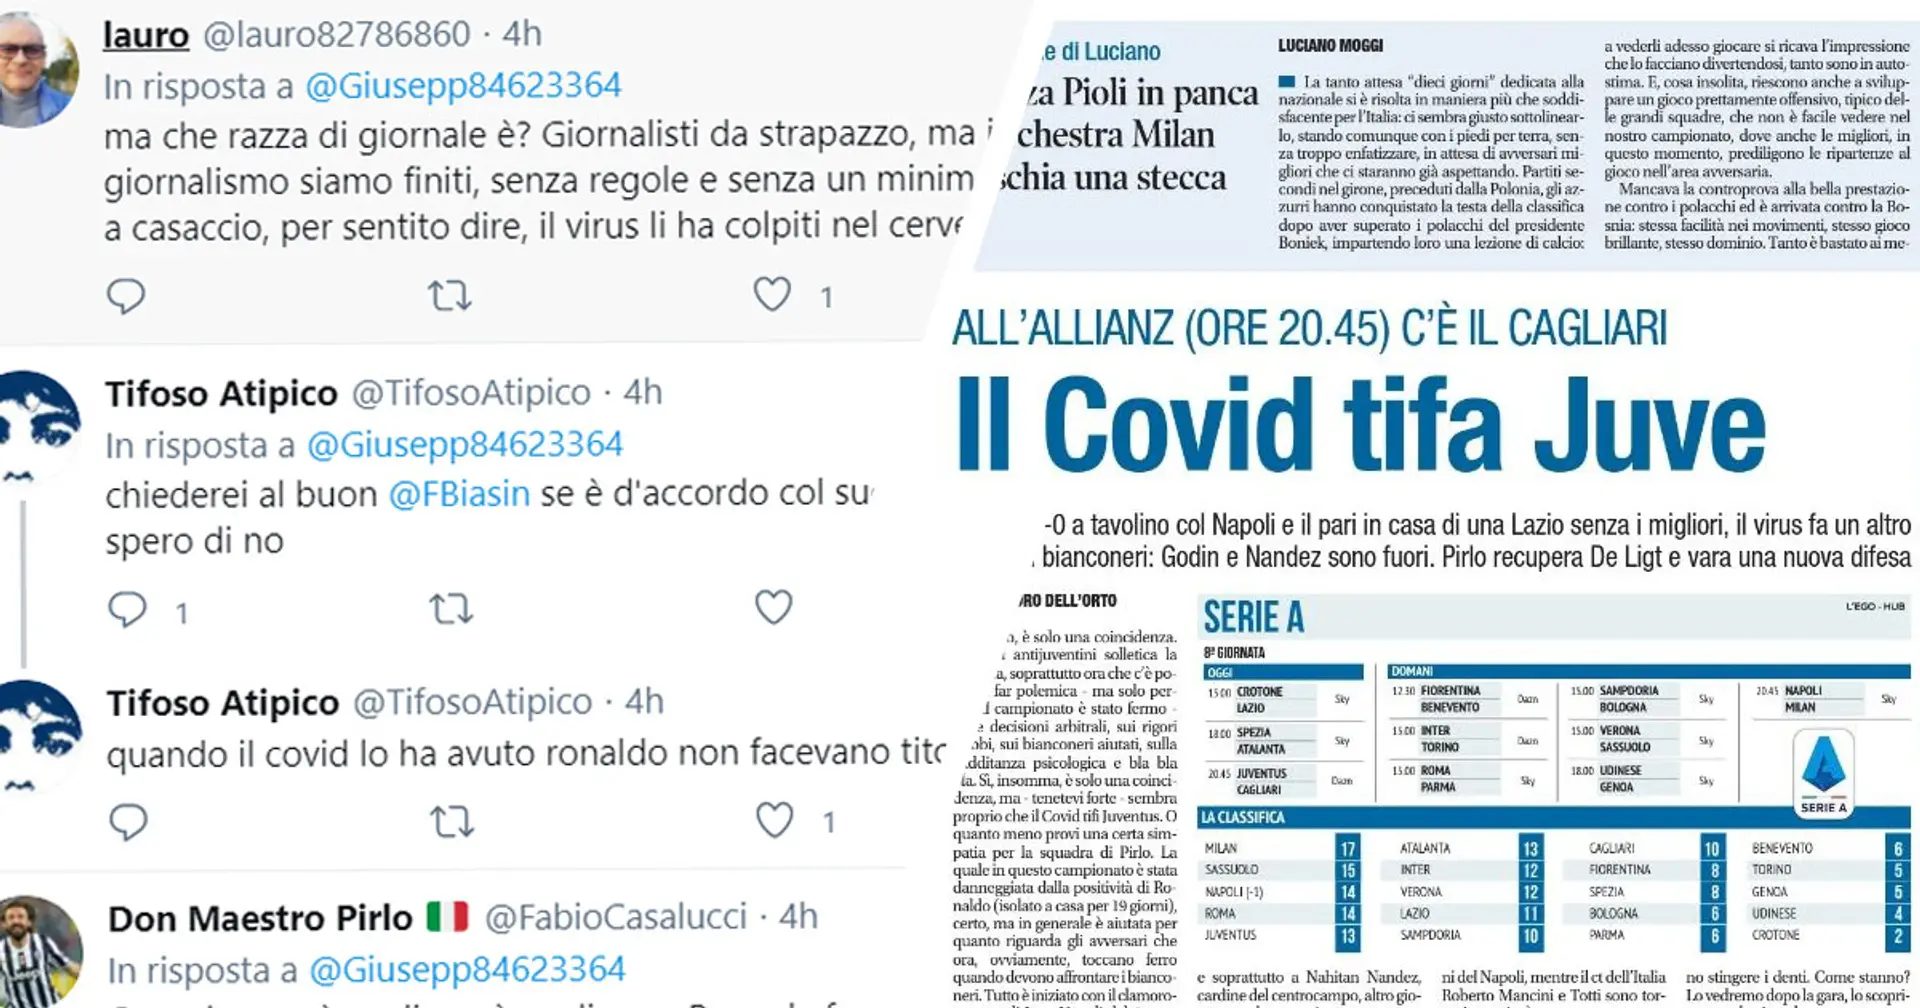 "Il Covid tifa Juventus", il titolo di Libero fa infuriare i tifosi: la reazione della community globale bianconera